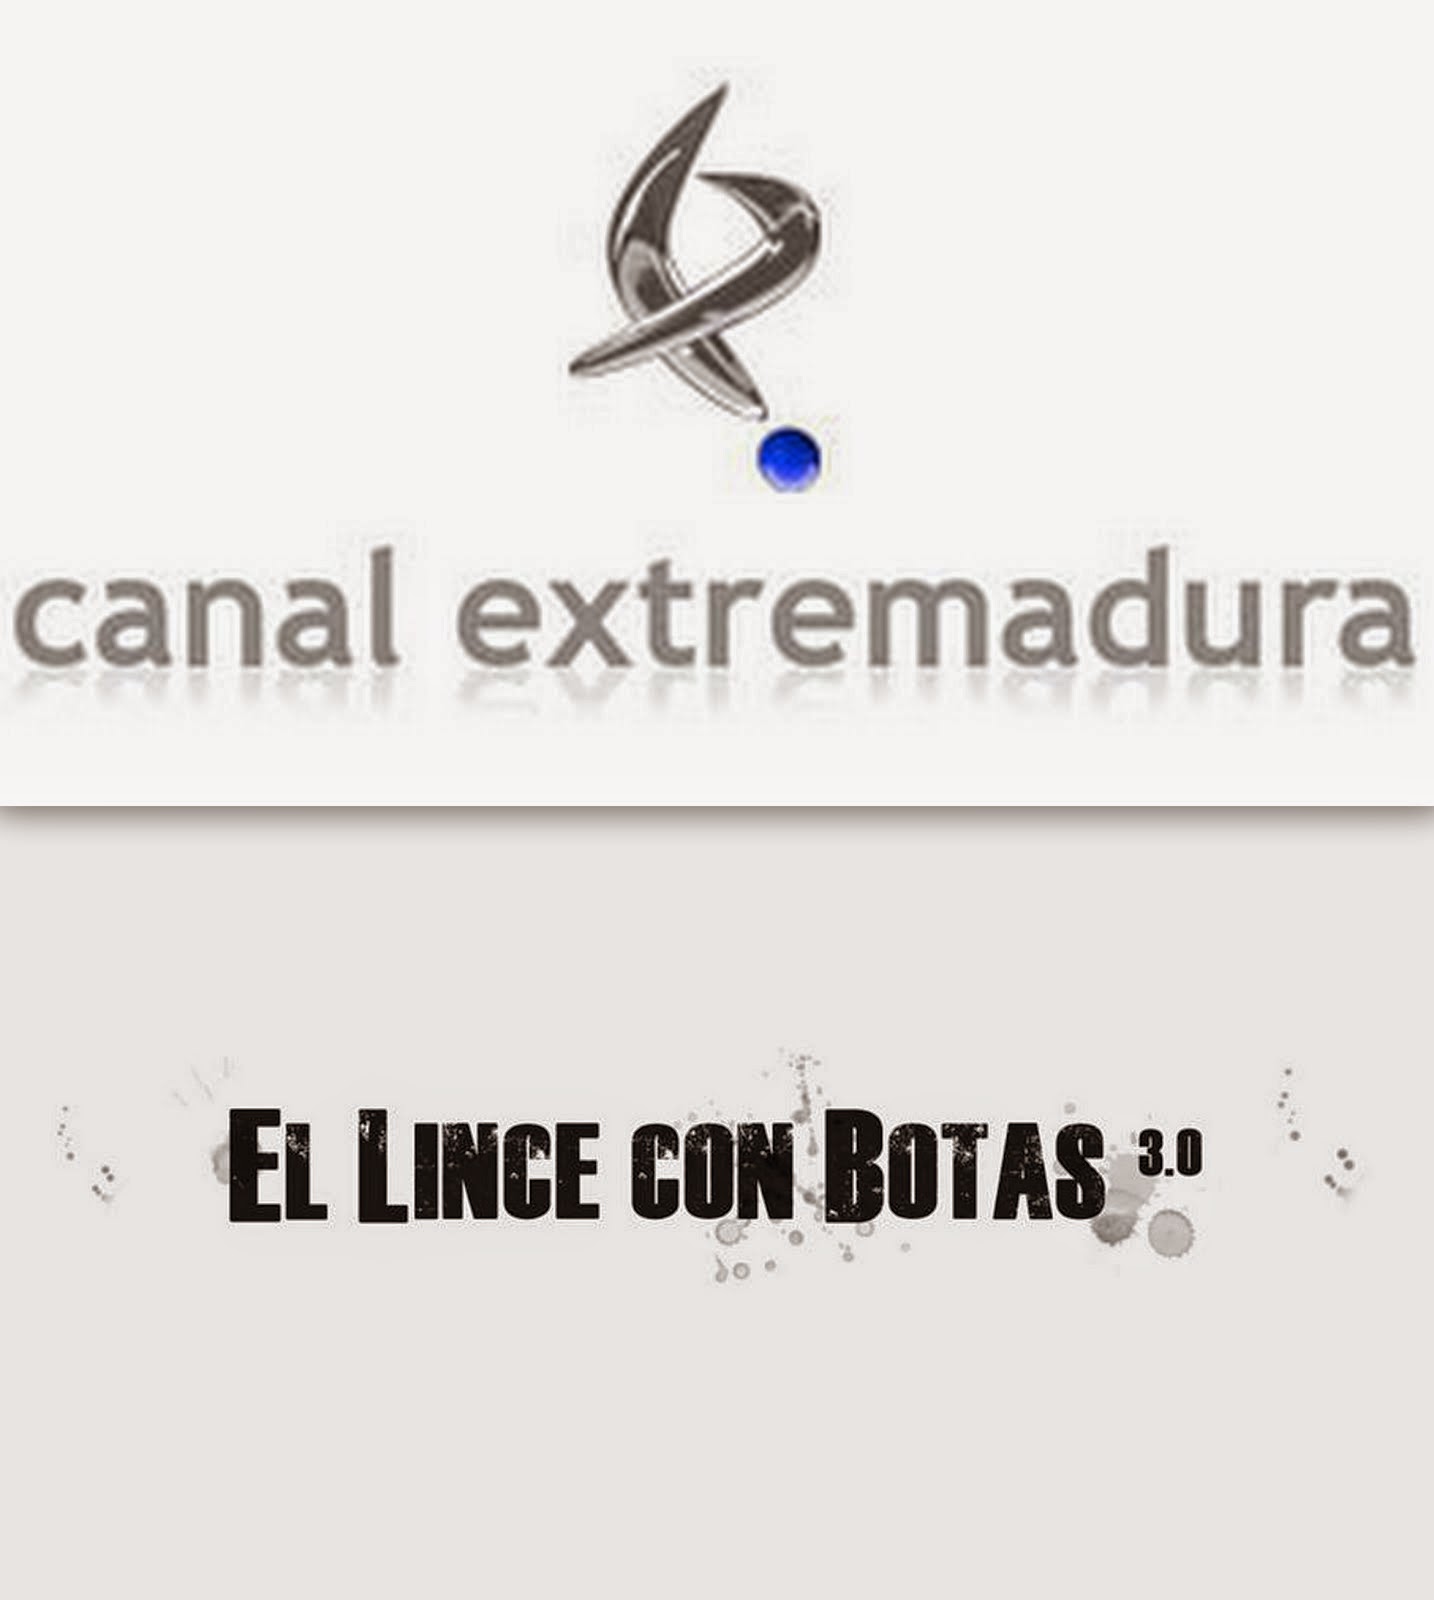 Canal Extremadura Televisión: El lince con botas 3.0